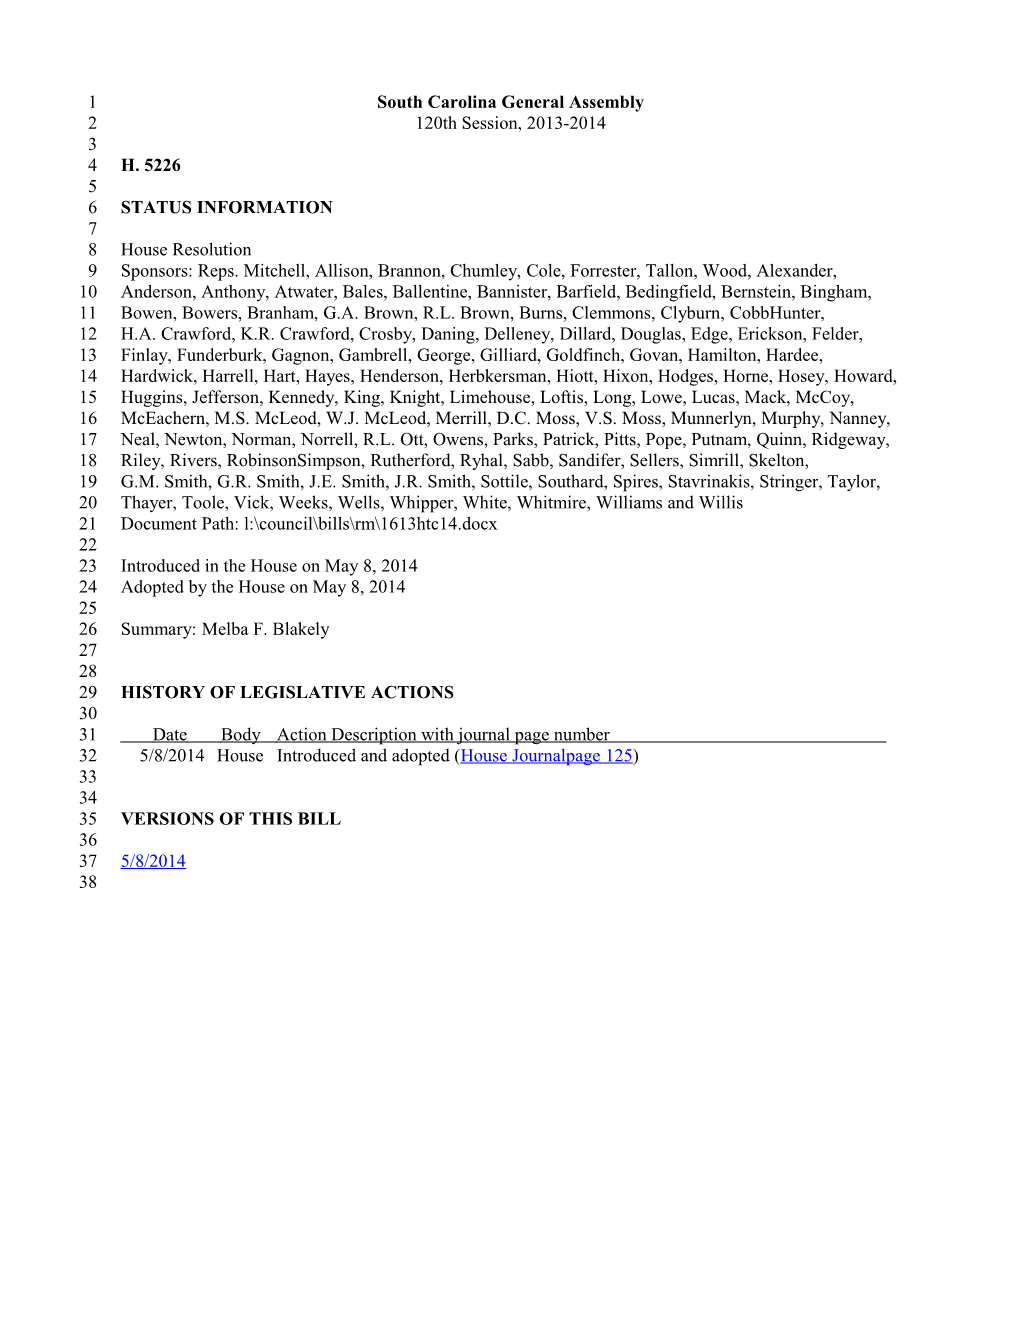 2013-2014 Bill 5226: Melba F. Blakely - South Carolina Legislature Online